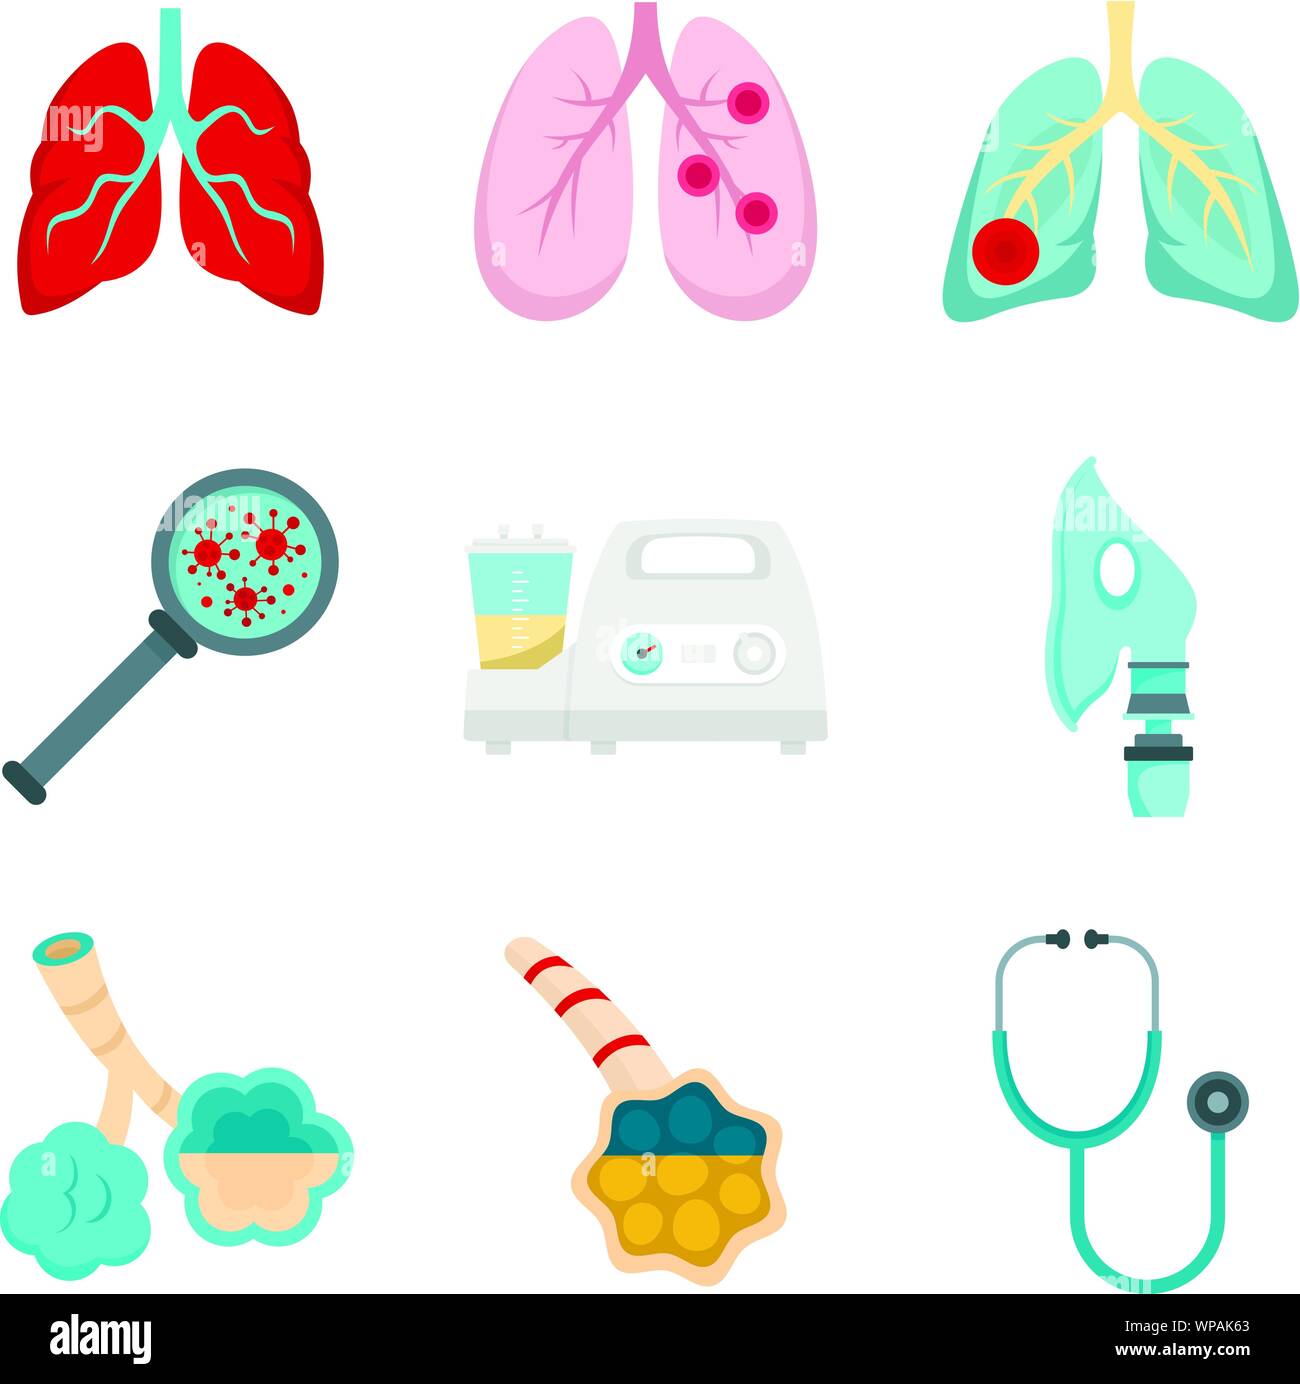 Lungenentzündung Icon Set. Flachbild der Pneumonie Vector Icons für Web Design Stock Vektor